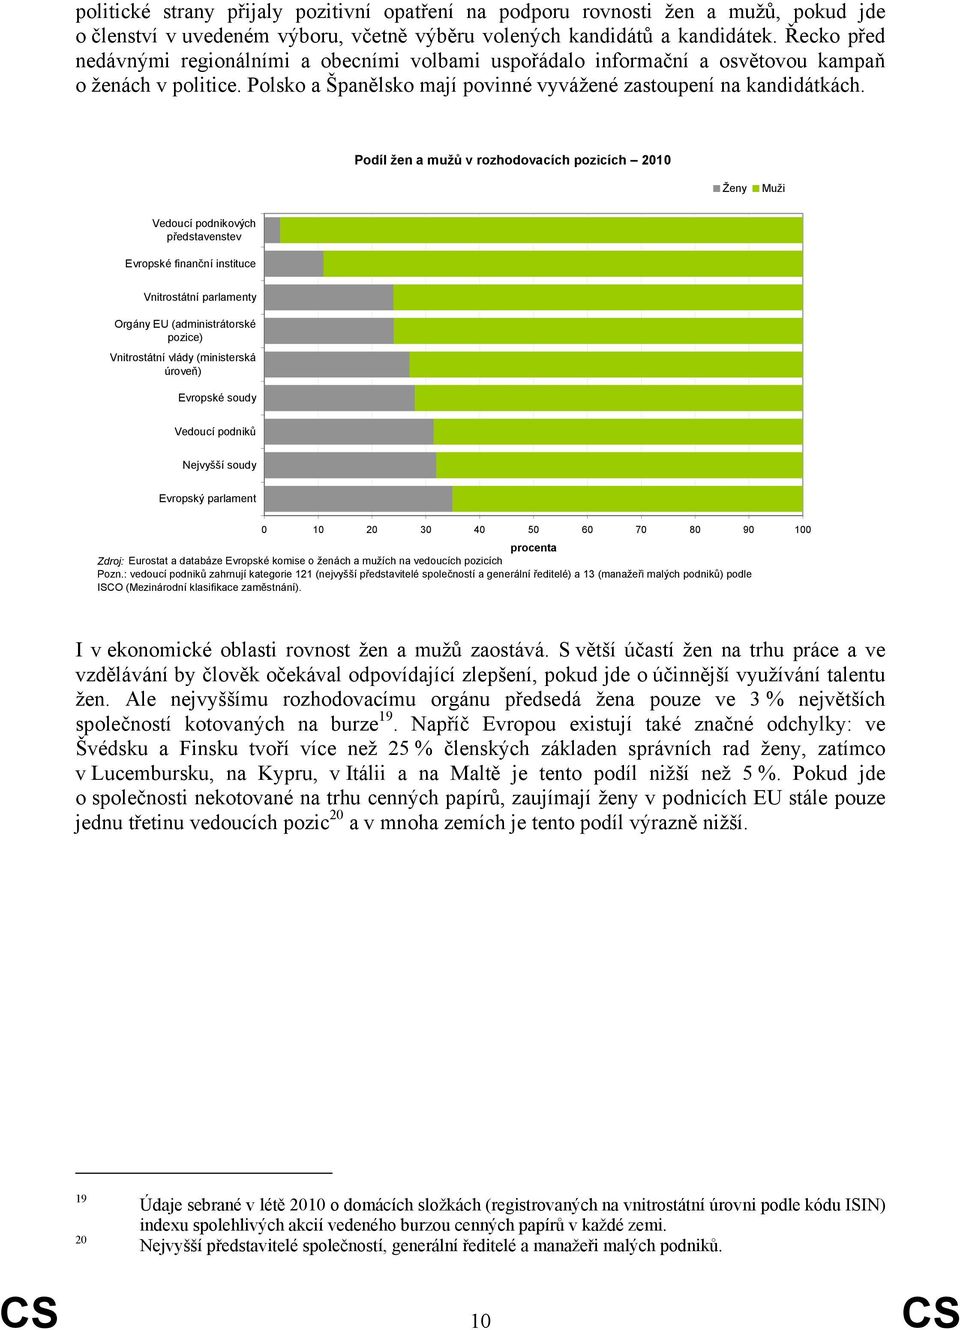 Podíl žen a mužů v rozhodovacích pozicích Ženy Muži Vedoucí podnikových představenstev Evropské finanční instituce Vnitrostátní parlamenty Orgány EU (administrátorské pozice) Vnitrostátní vlády